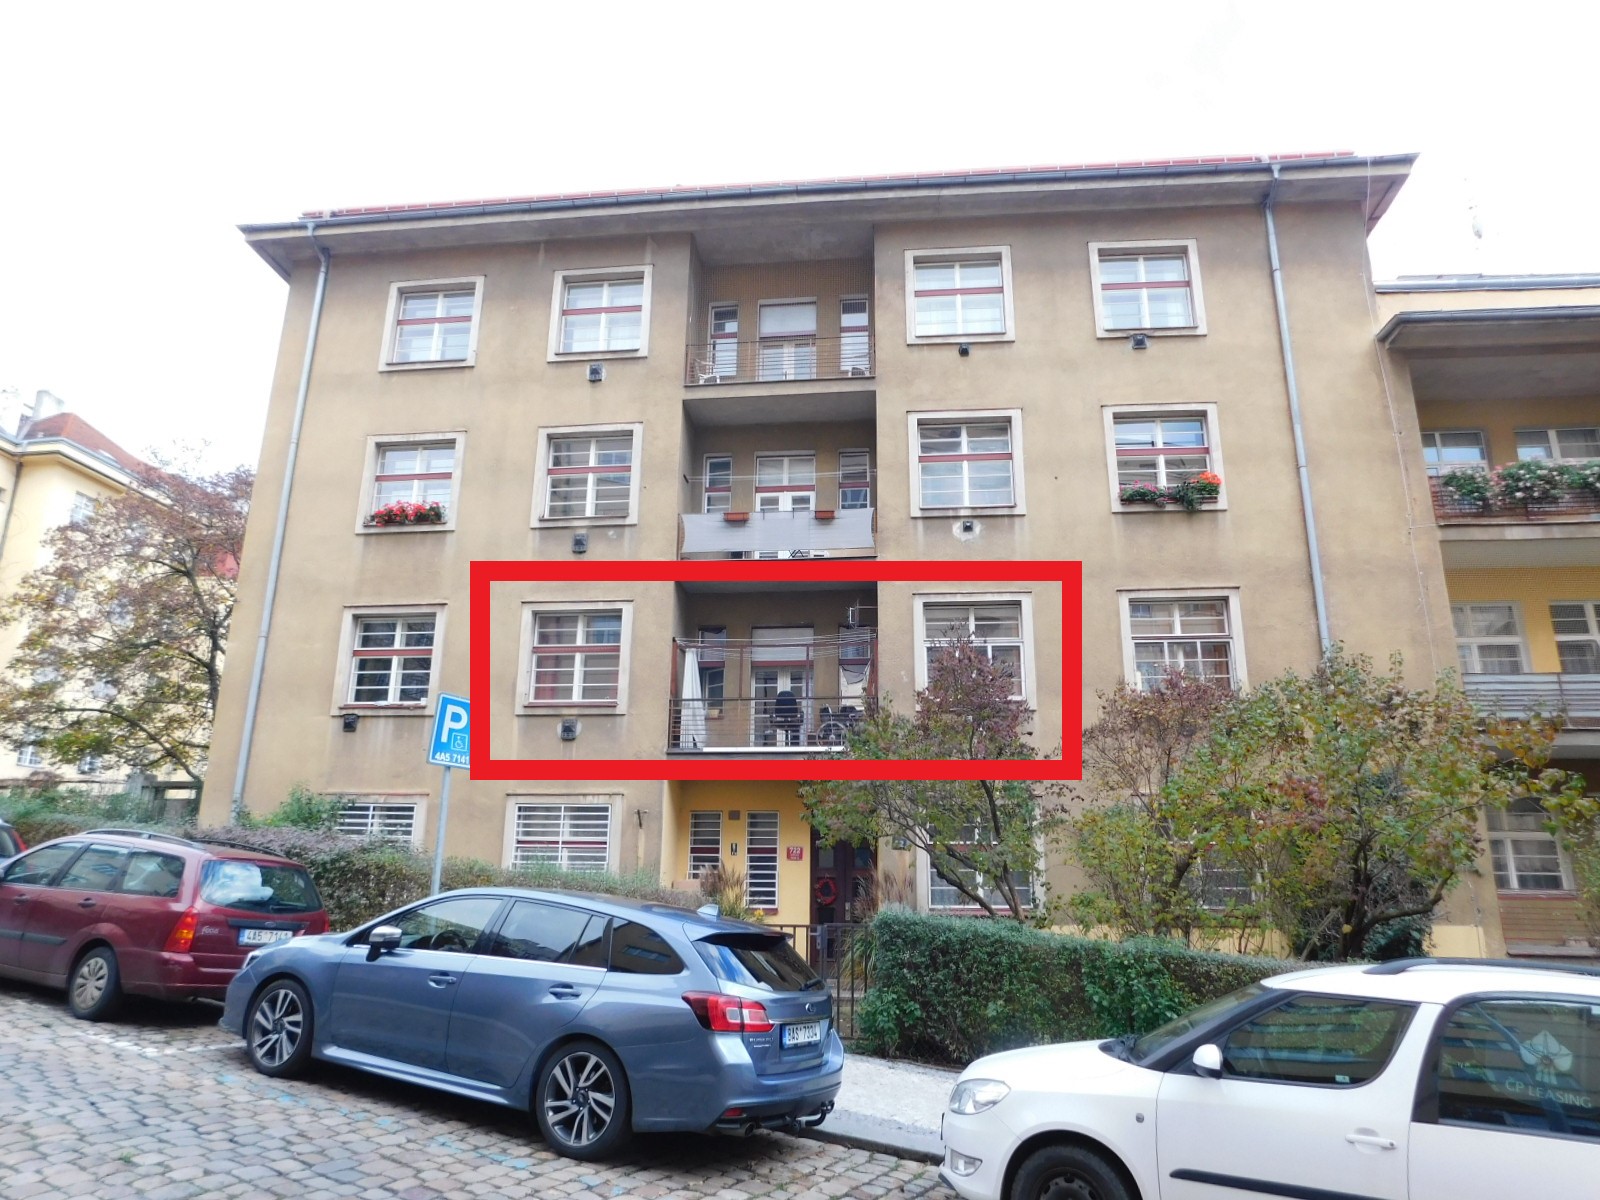 Prodej družstevního bytu 1+1+L o výměře 51m2 + 4m2 lodžie, ul. Tolstého, Praha 10 - Vršovice - byt do 60 m2